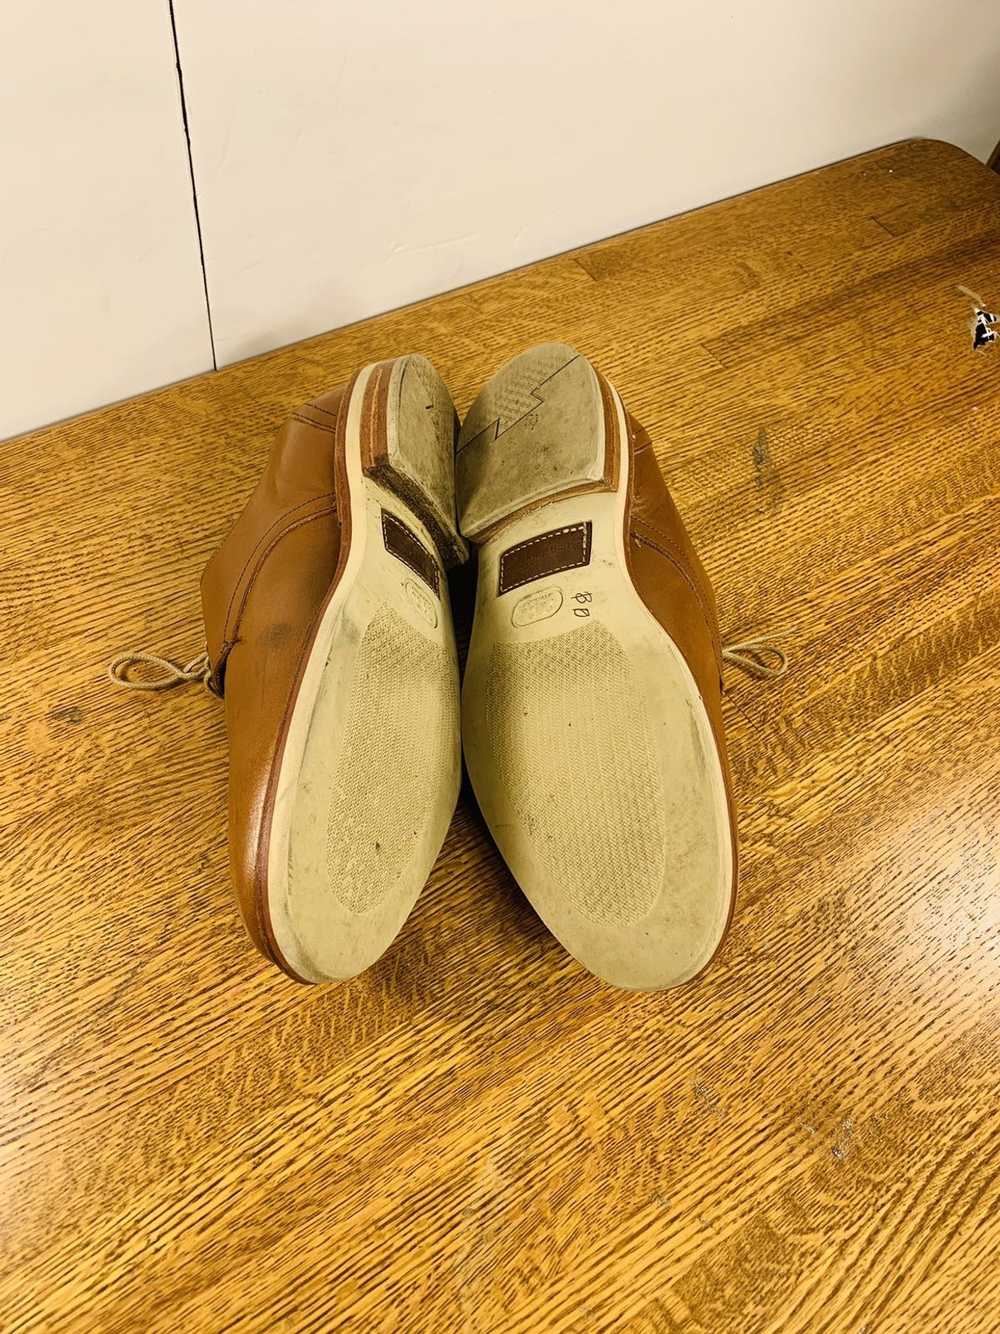 Allen Edmonds Allen Edmonds Men’s Oxfords Shoes - image 7